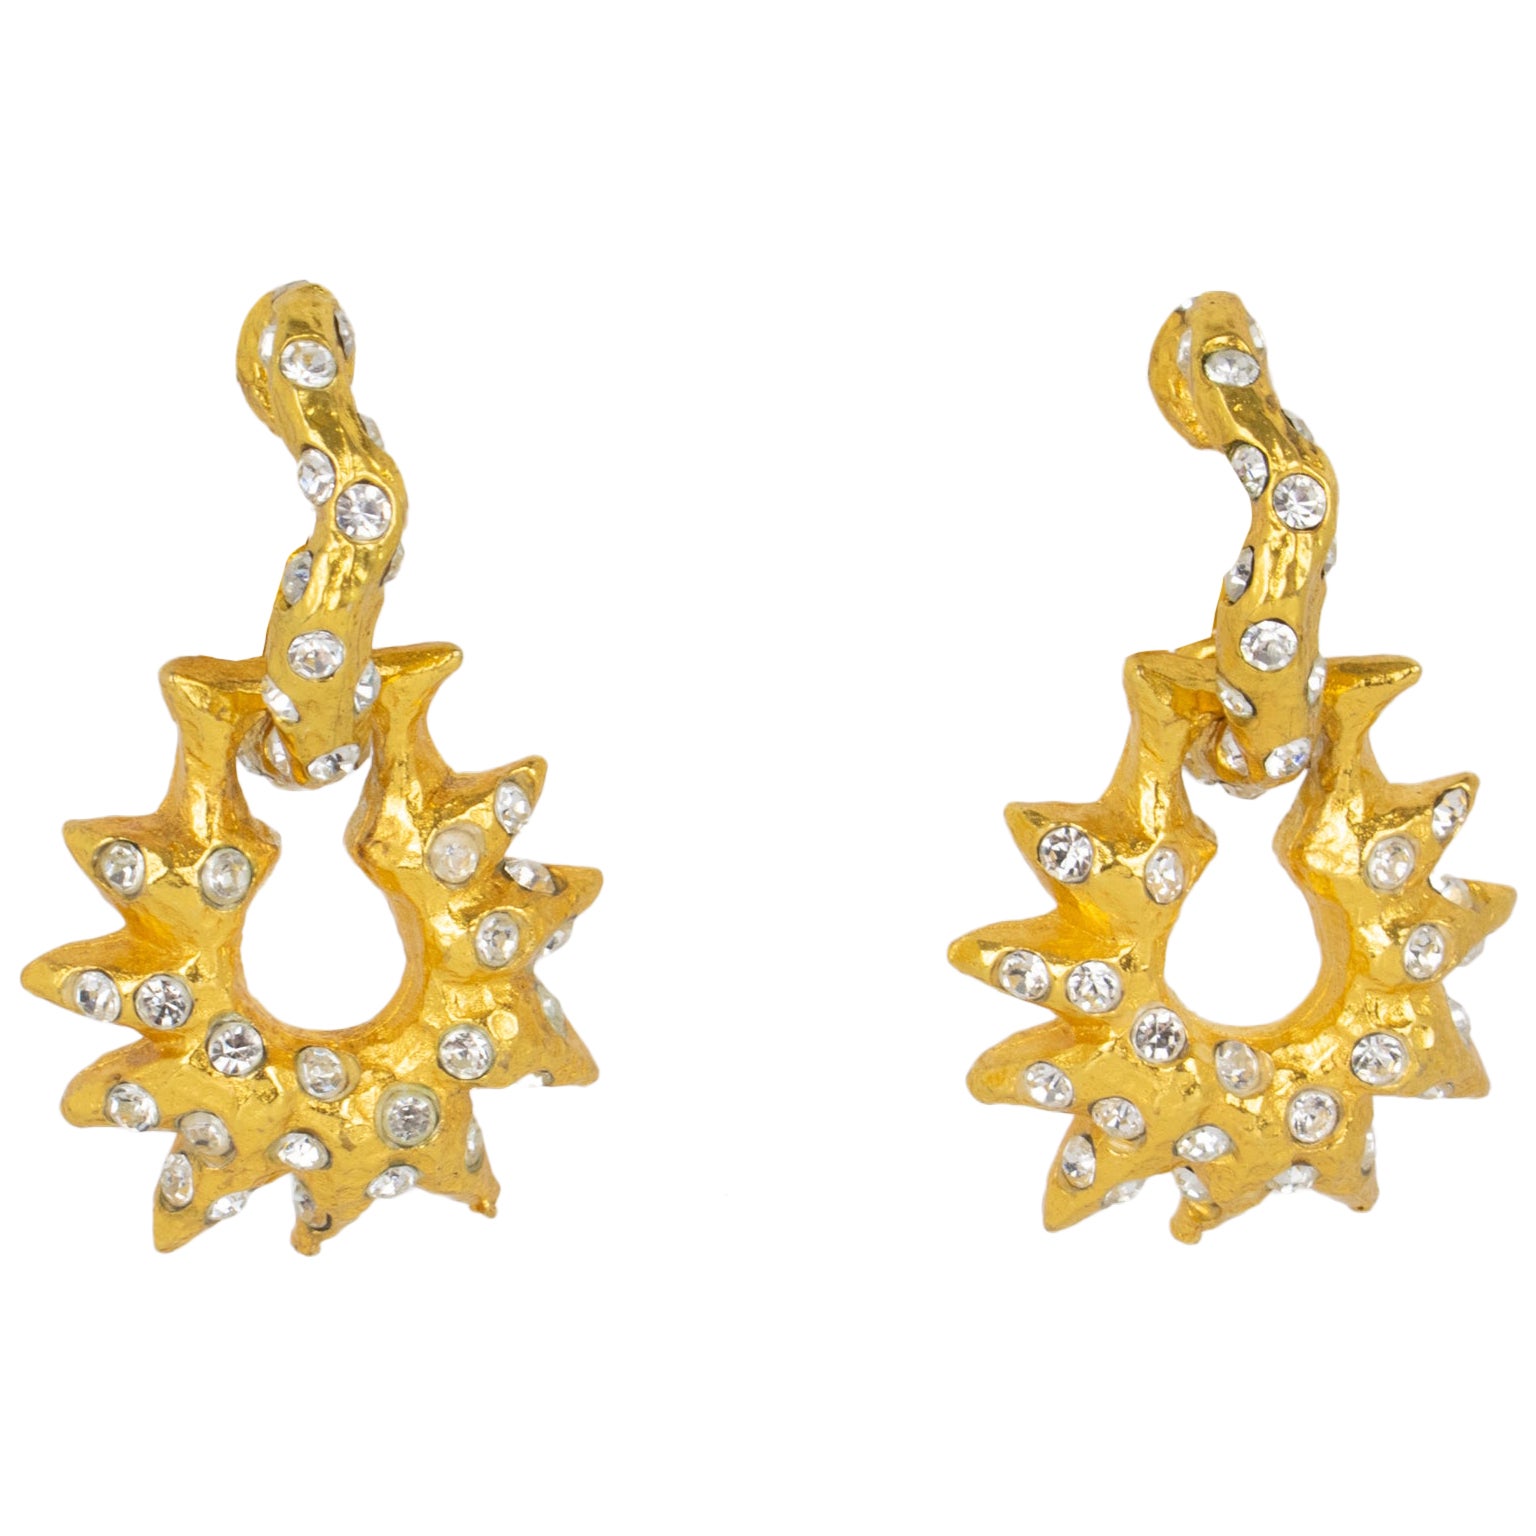 Alexis Lahellec Paris Gilt Metal Jeweled Door Knocker Clip Earrings